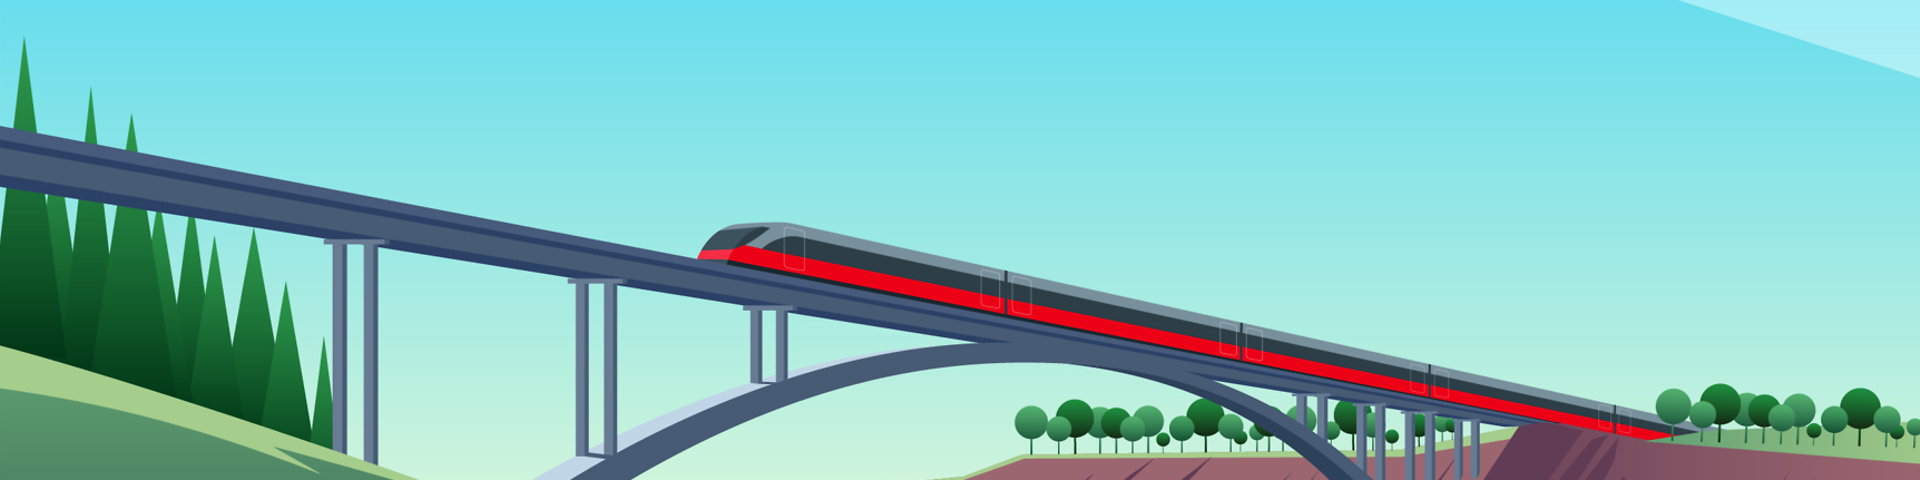 Ein Zug fährt vor blauem Himmel über eine Brücke - gemalt